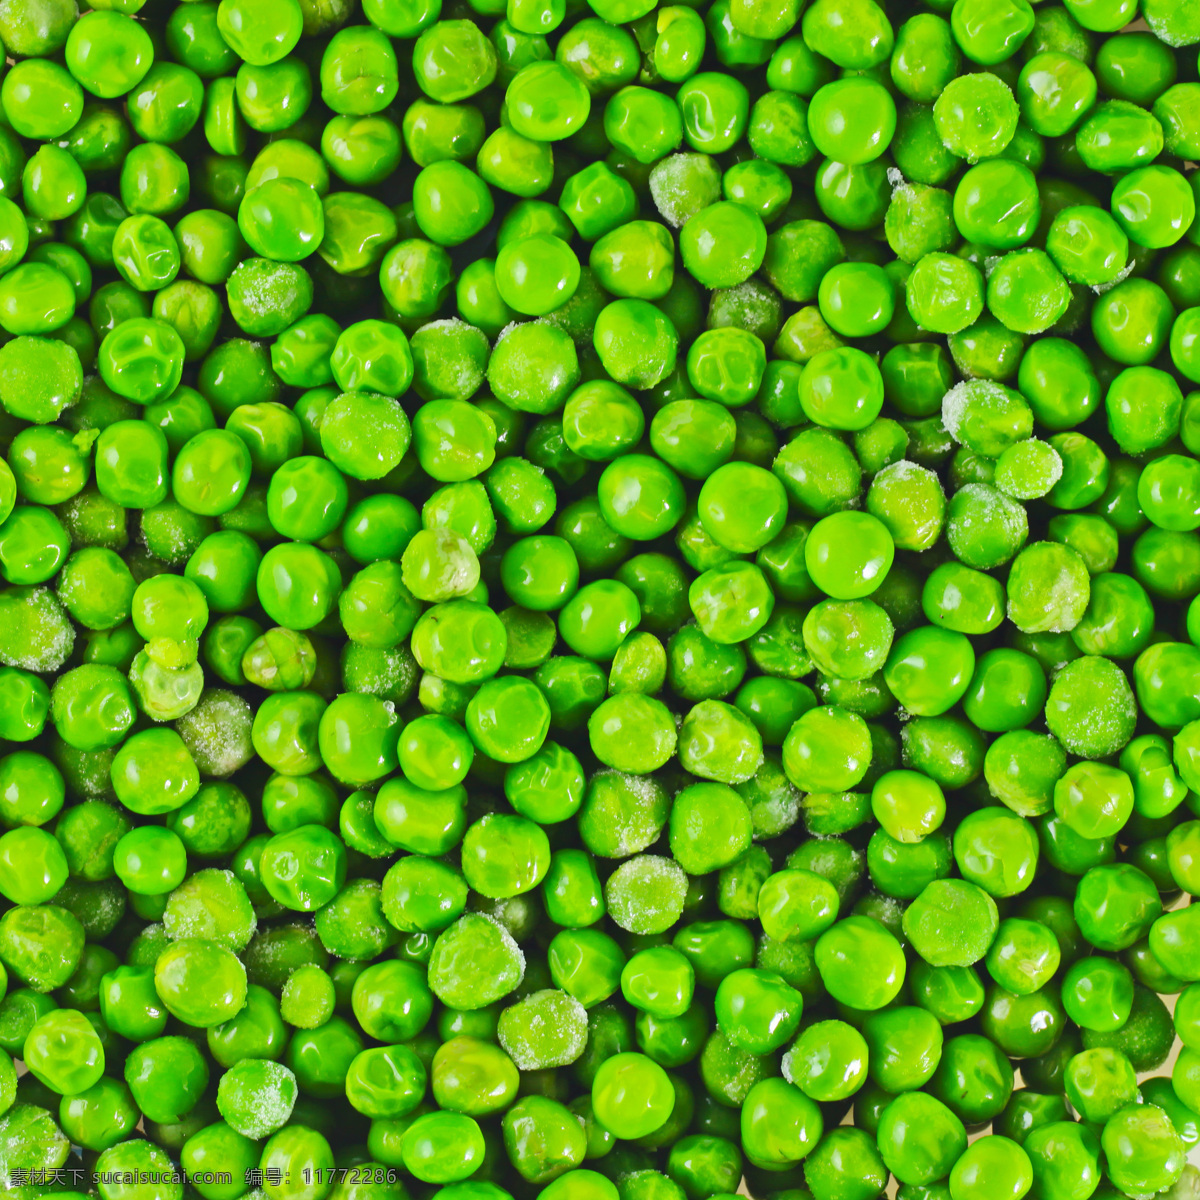 青豆 绿豆 小青豆 小绿豆 豌月豆 豆荚 豆角 蔬菜 蔬菜图片 豌豆图片 菜 生物世界